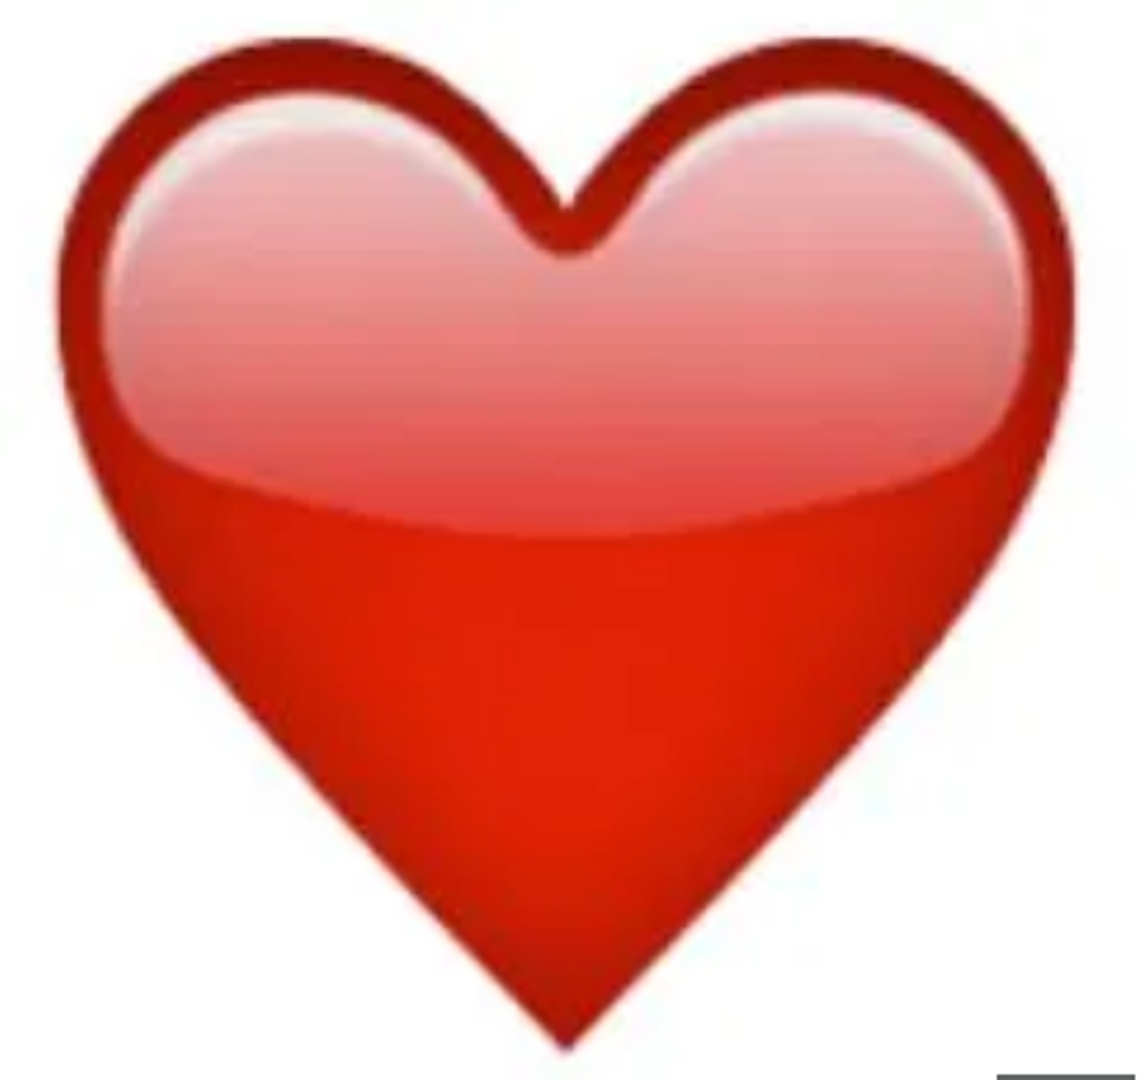 Crveno srce predstavlja iskrenu ljubav, a može se koristiti kako biste iskazali strast i romantiku.